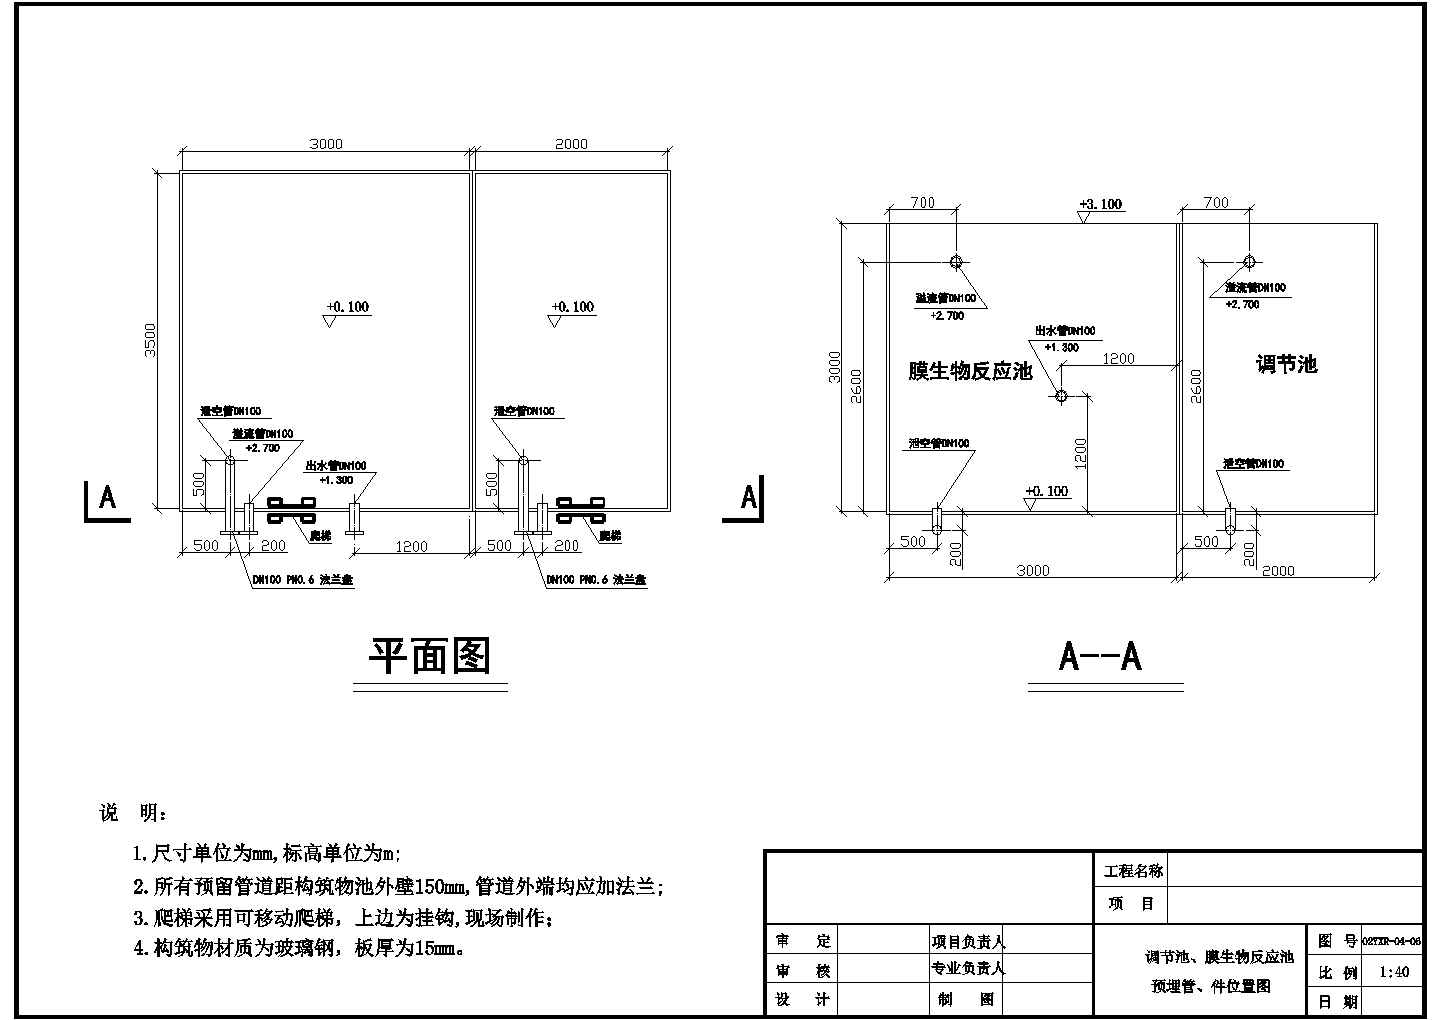 【北京】某工程公司膜生物反应器工艺全套图纸